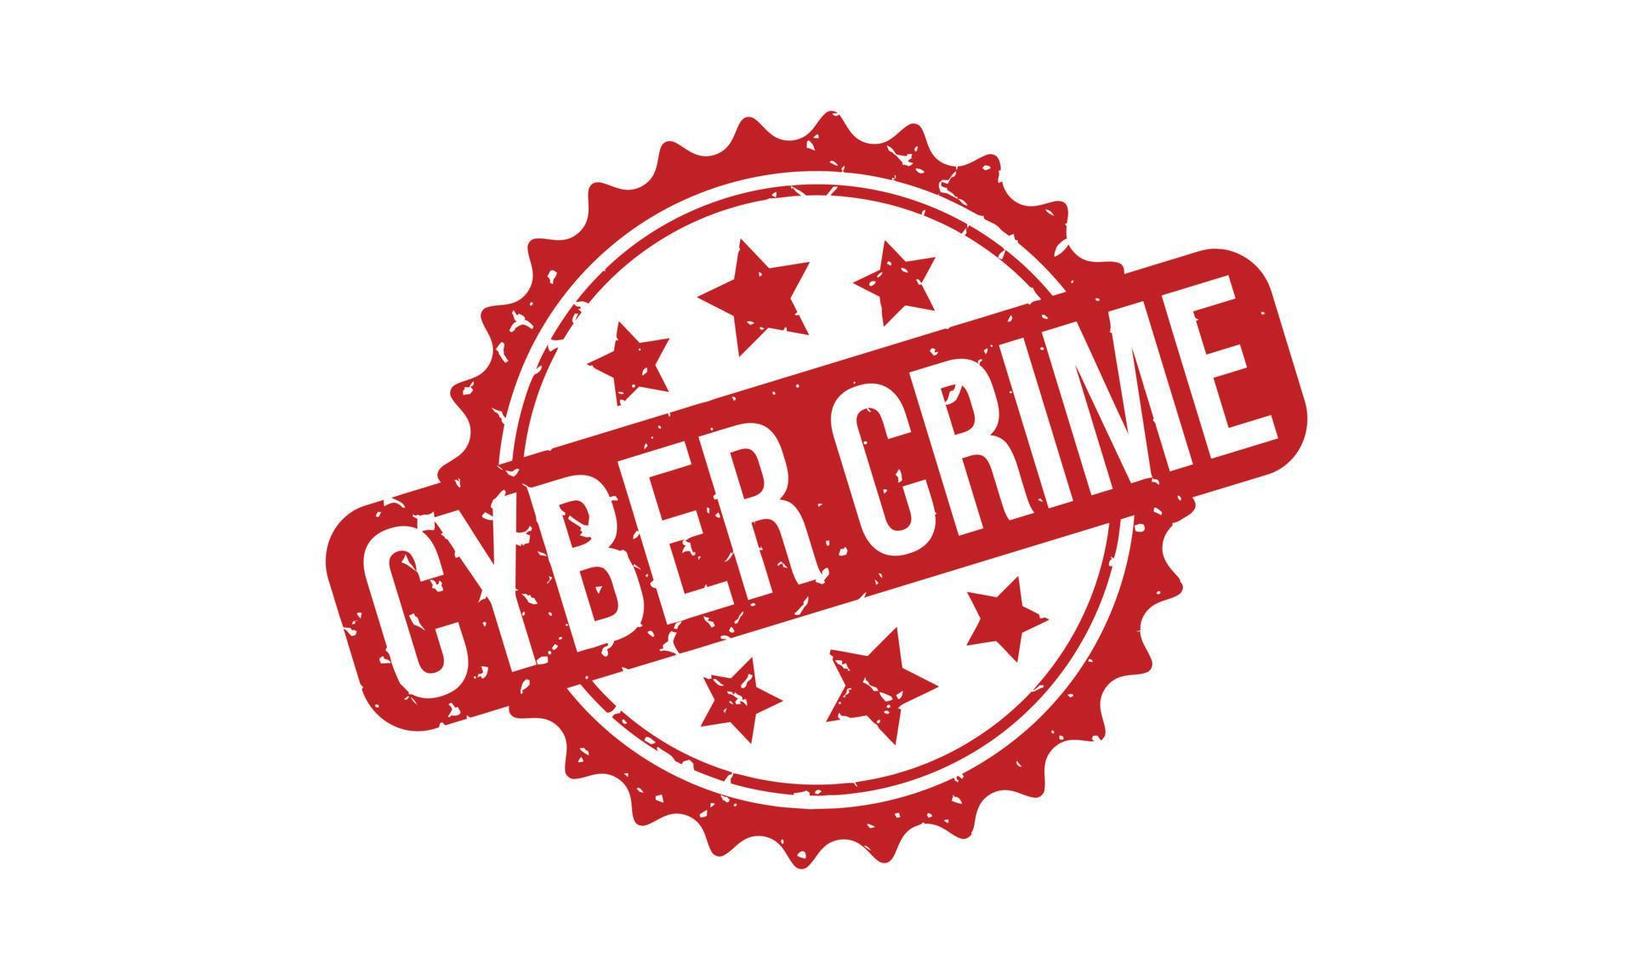 Cyber Verbrechen Gummi Briefmarke. Cyber Verbrechen Gummi Grunge Briefmarke Siegel Vektor Illustration